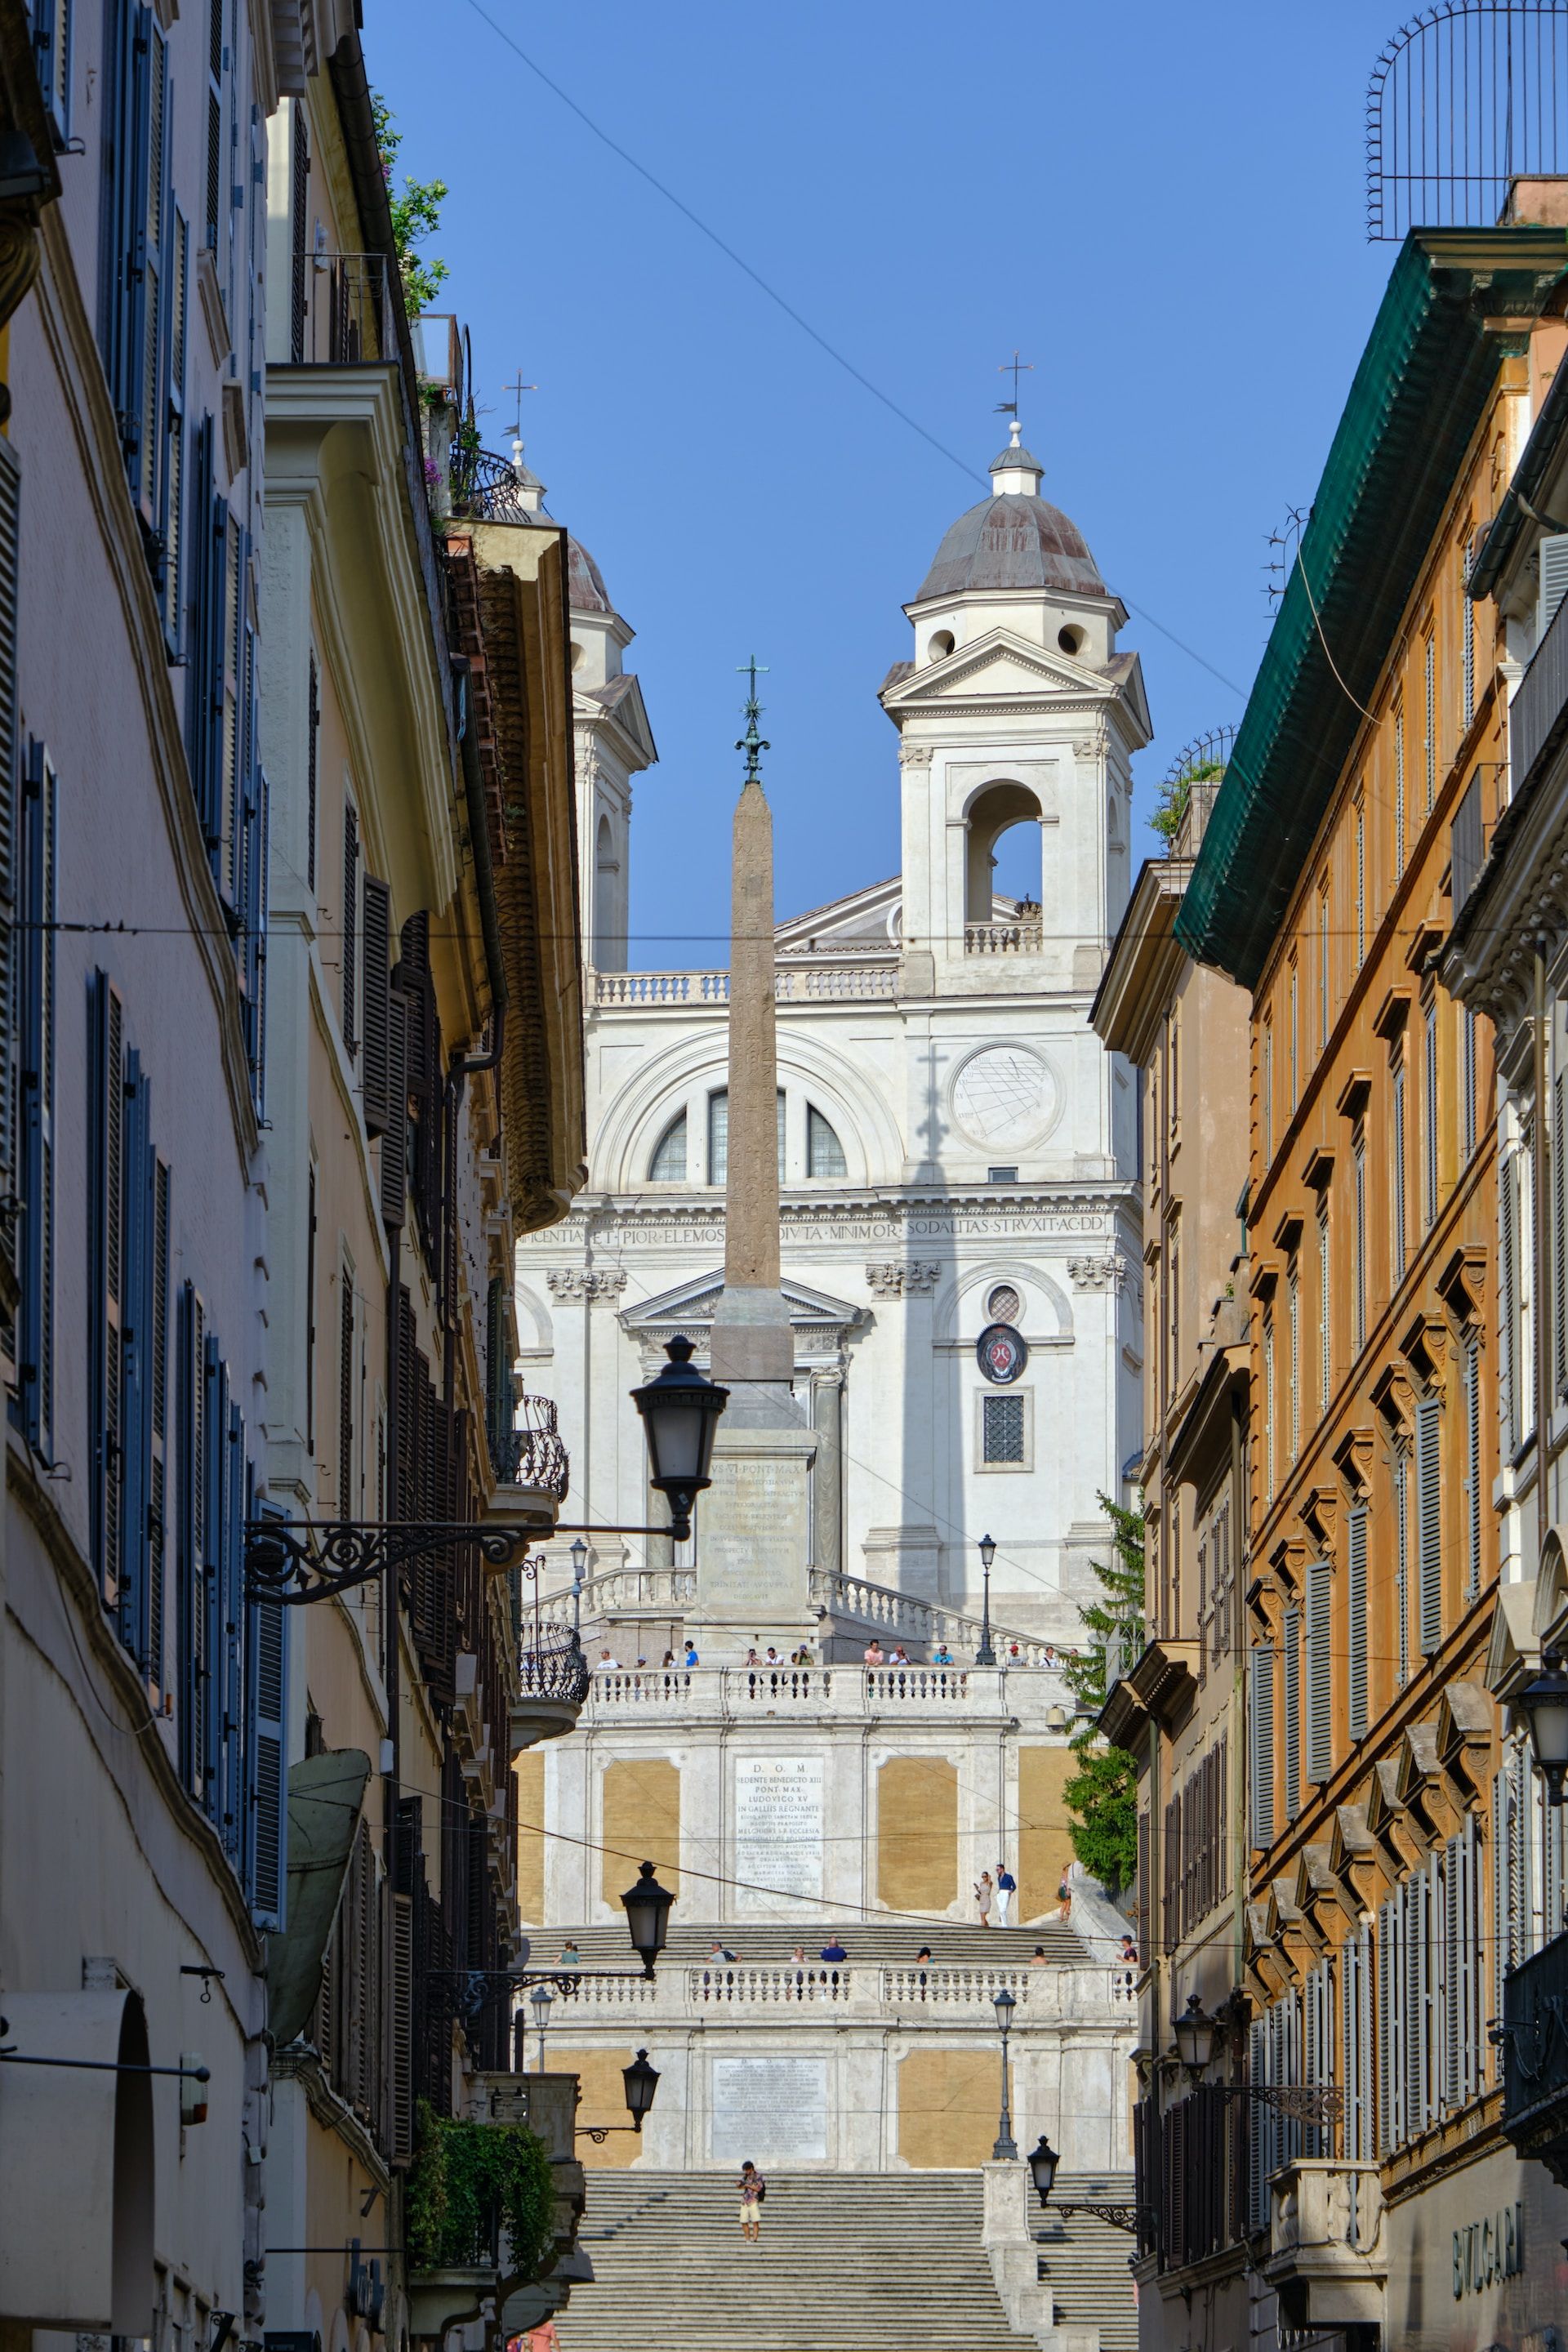 Trinità dei Monti from Condotti's street